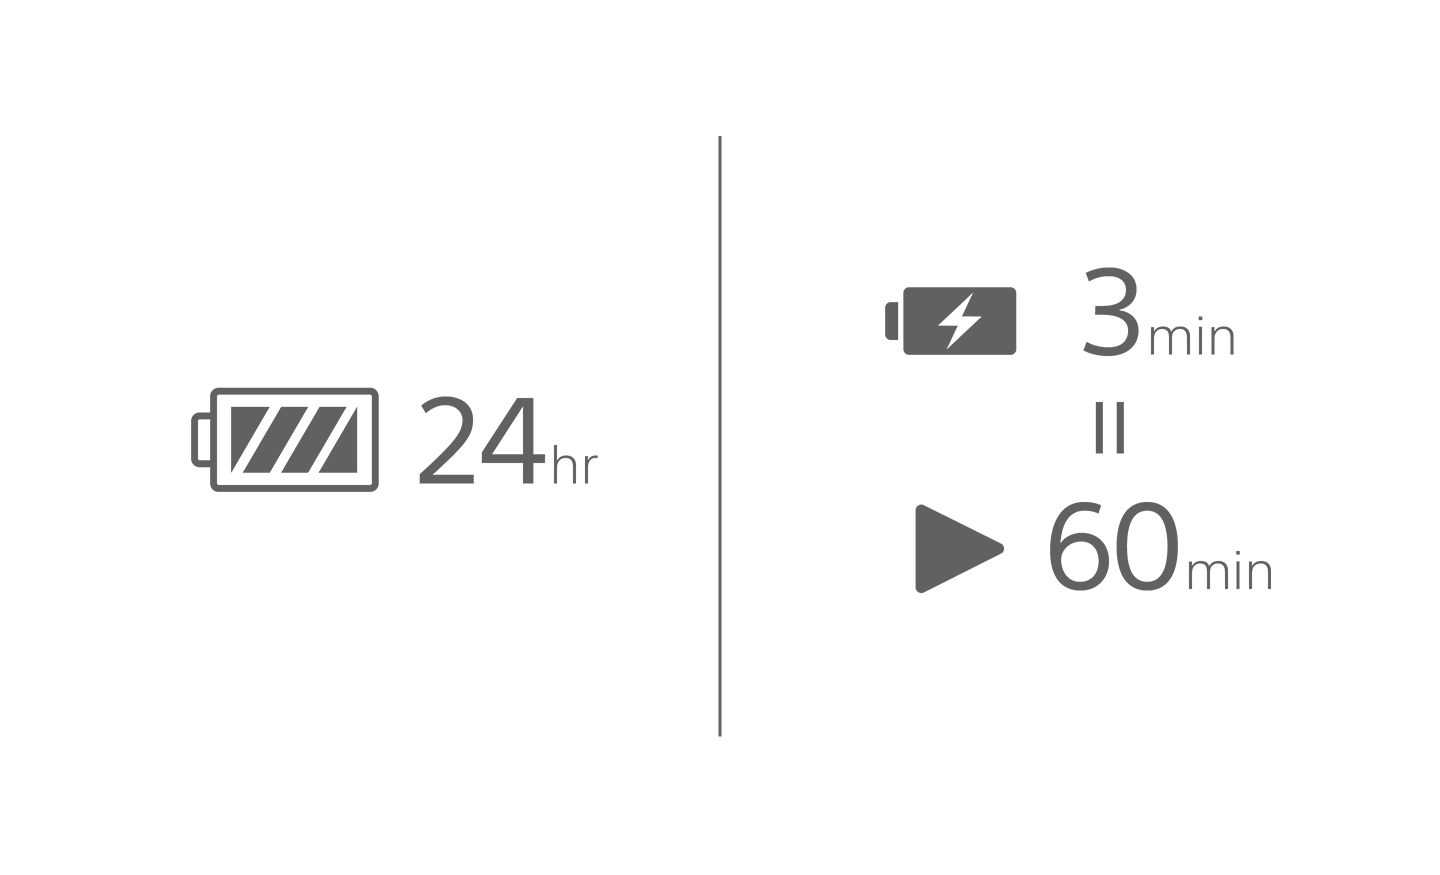 Akkumulátorikon képe 24 óra szöveggel, egy másik akkumulátornál a töltés mellett 3 perc, a lejátszás ikon felett pedig 60 perc olvasható